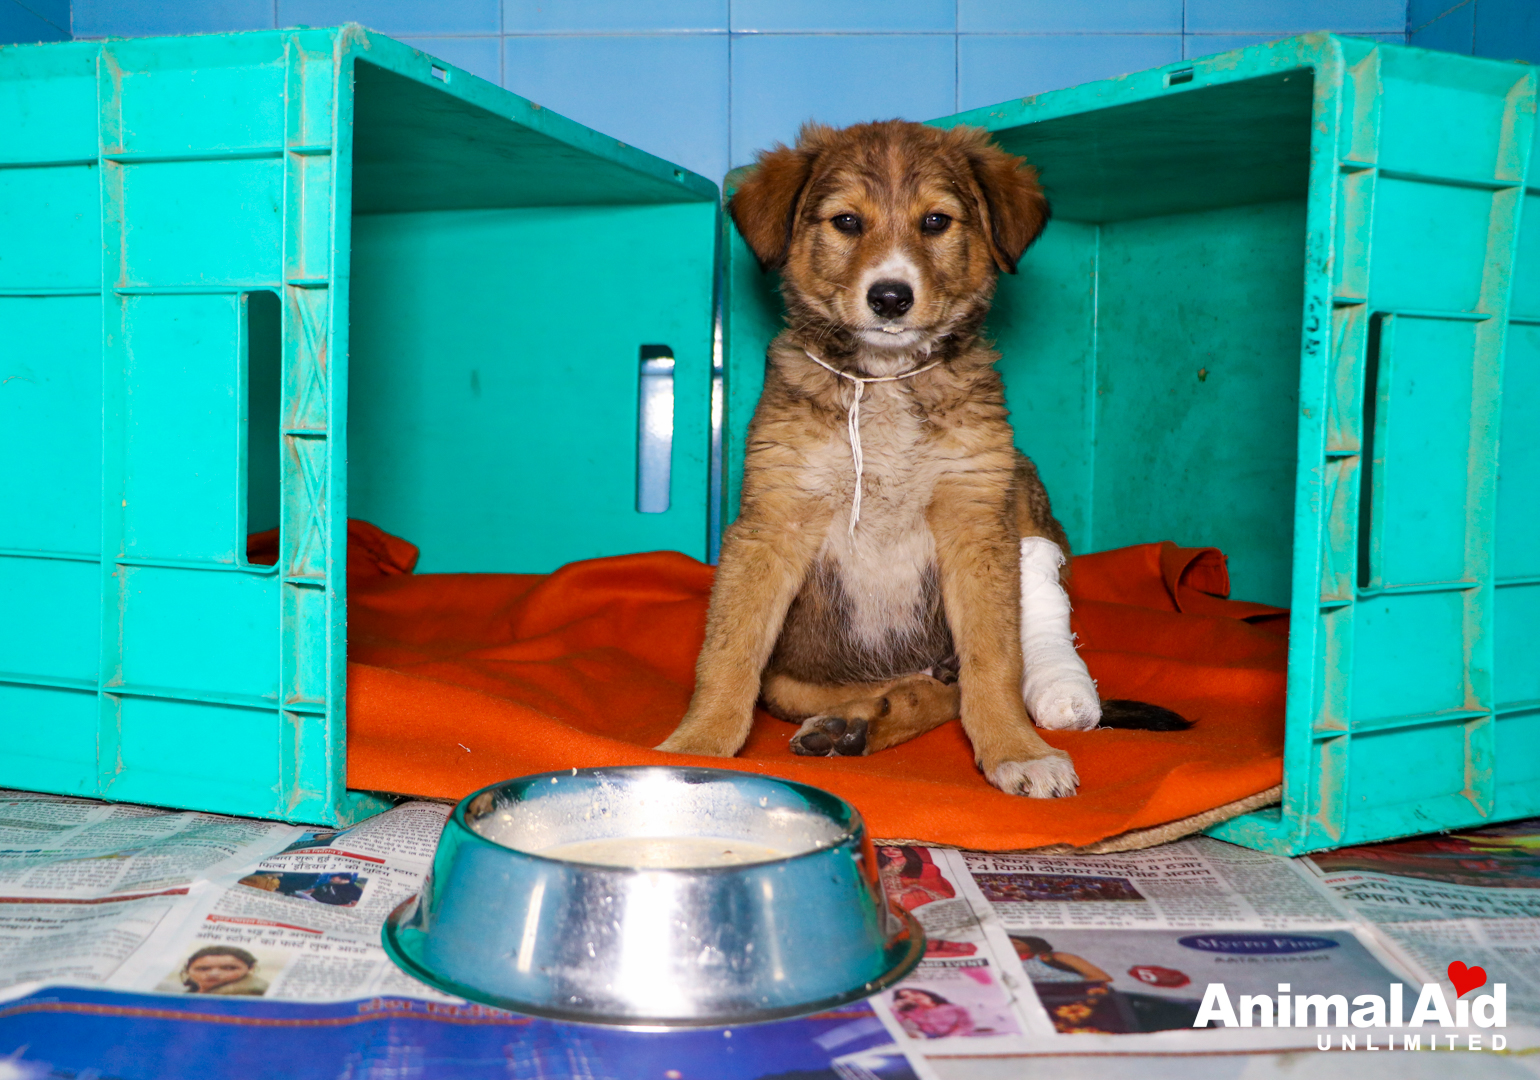 Animal Aid Unlimited (@AnimalAid_India) / Twitter